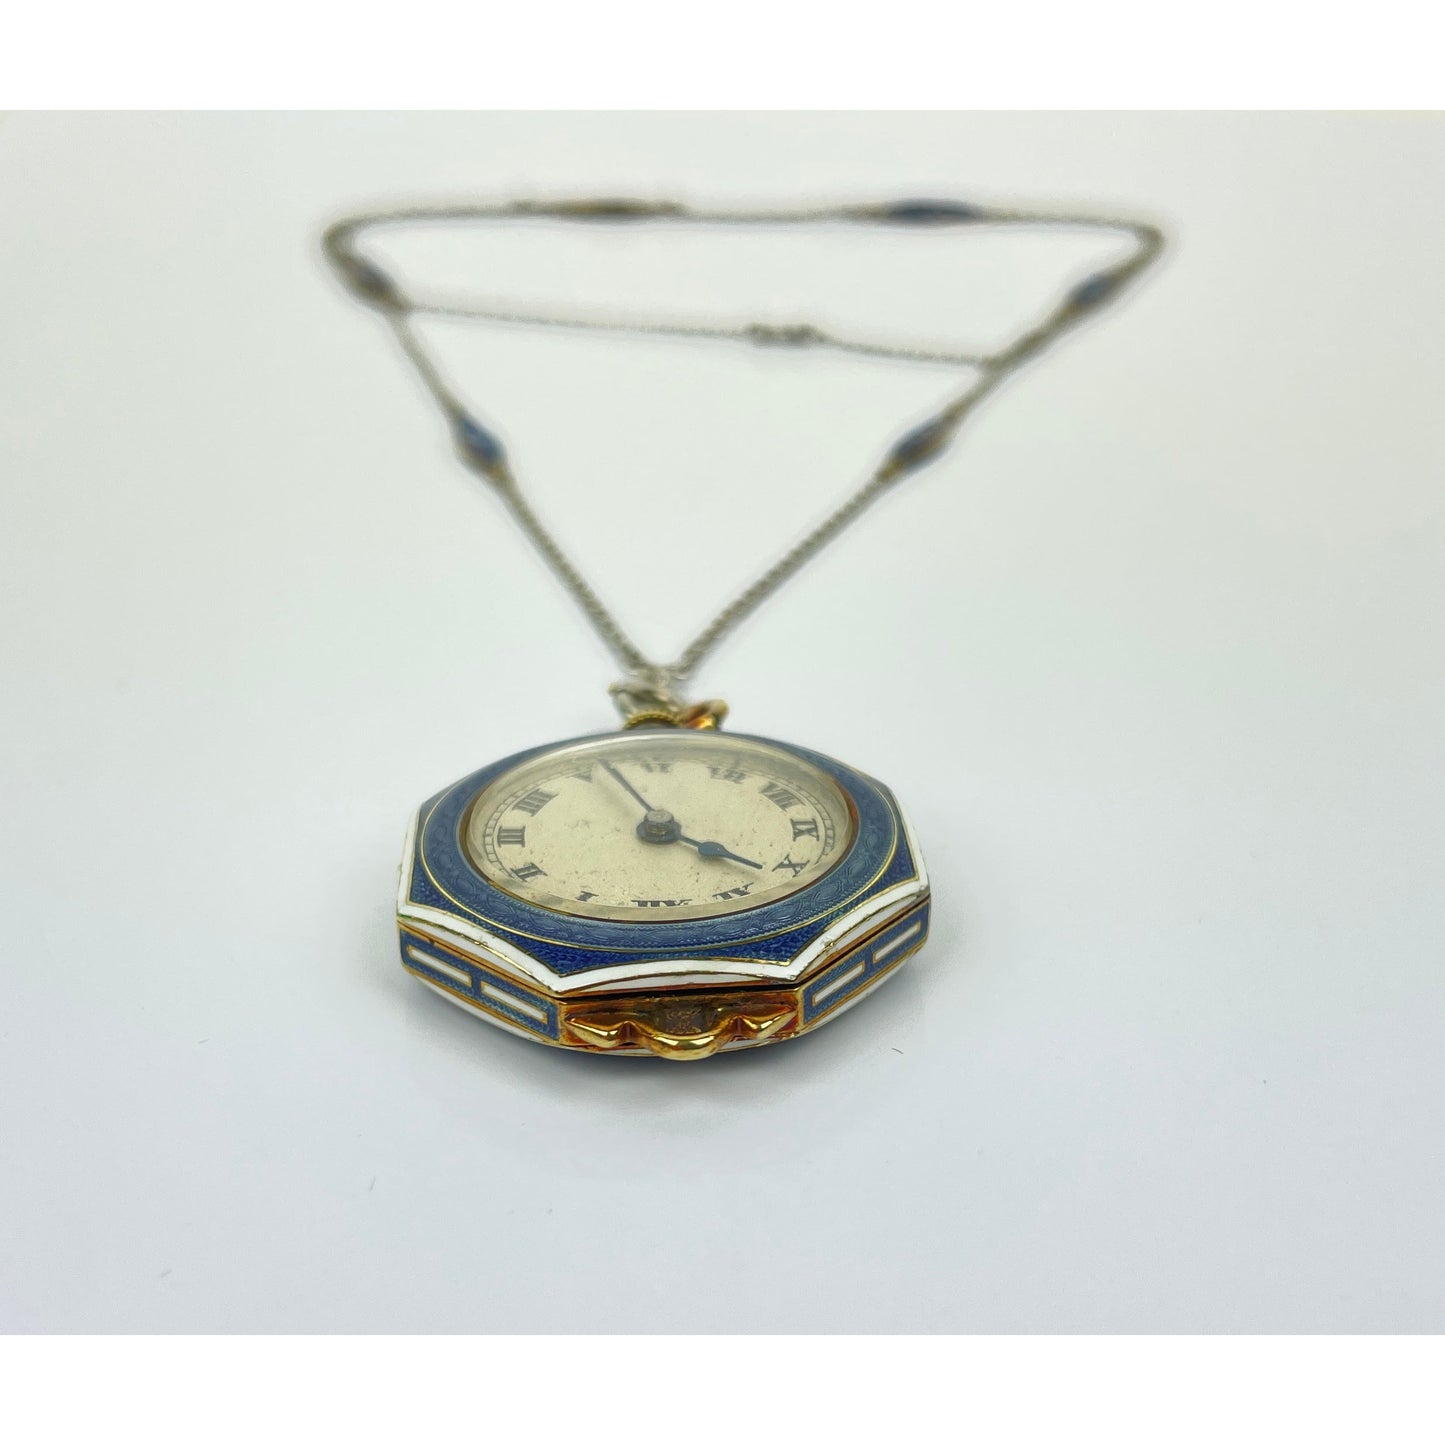 Edwardian 14k Gold Guilloche Enamel Pocket Watch Necklace